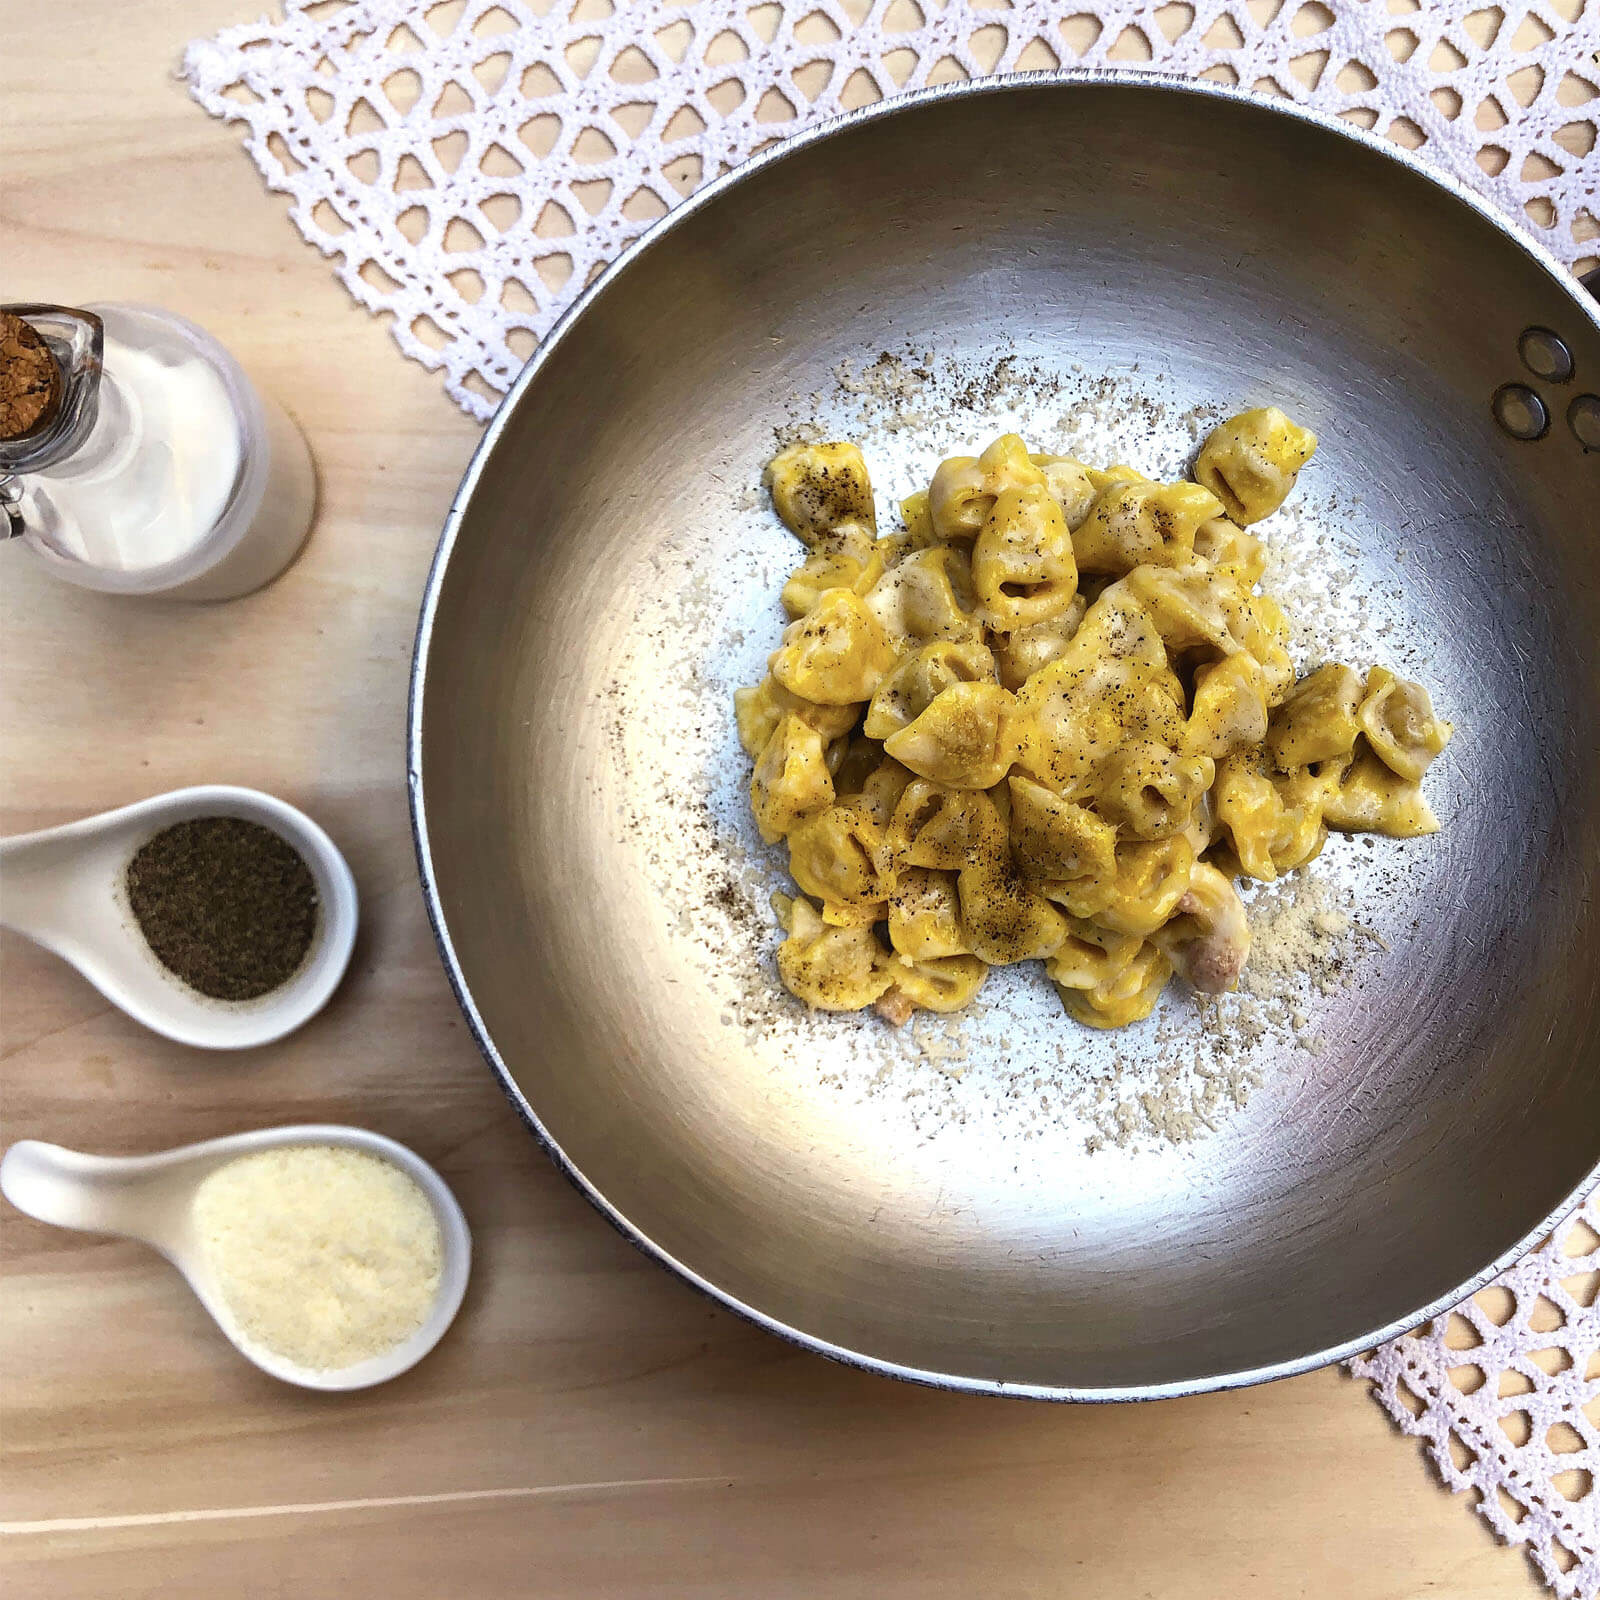 Primi con pasta fresca, secondi piatti e fritti della cucina italiana